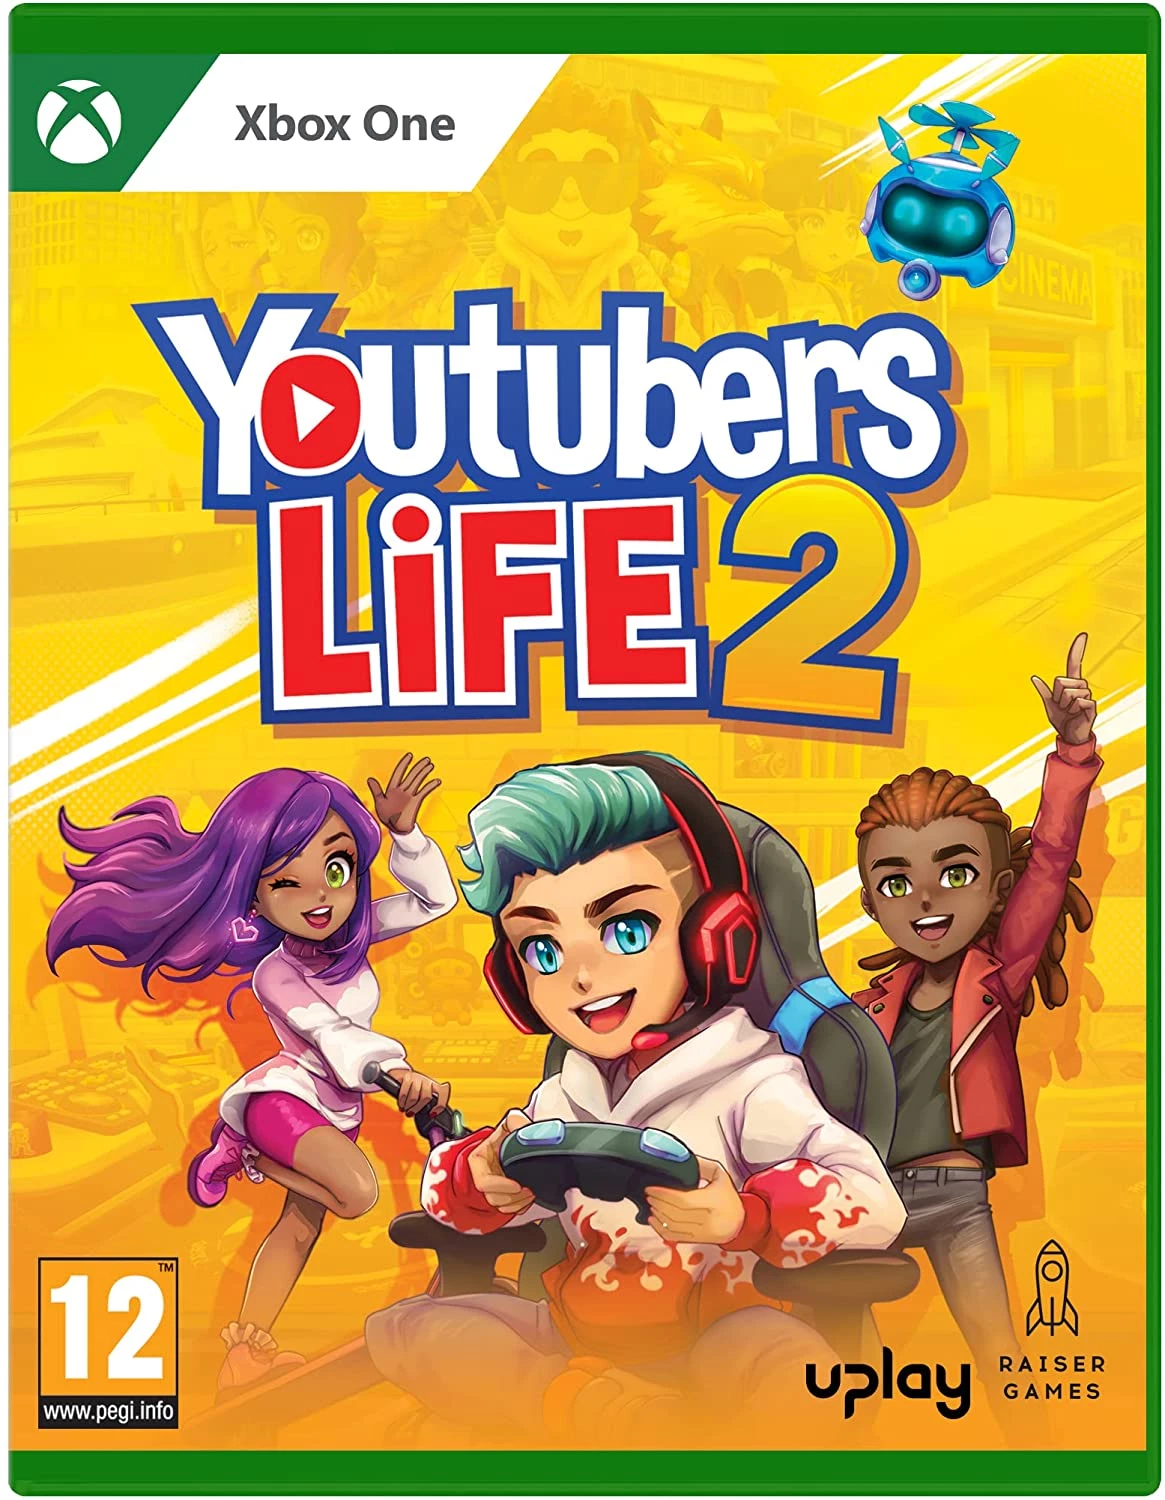 Youtubers Life 2 voor de Xbox One preorder plaatsen op nedgame.nl